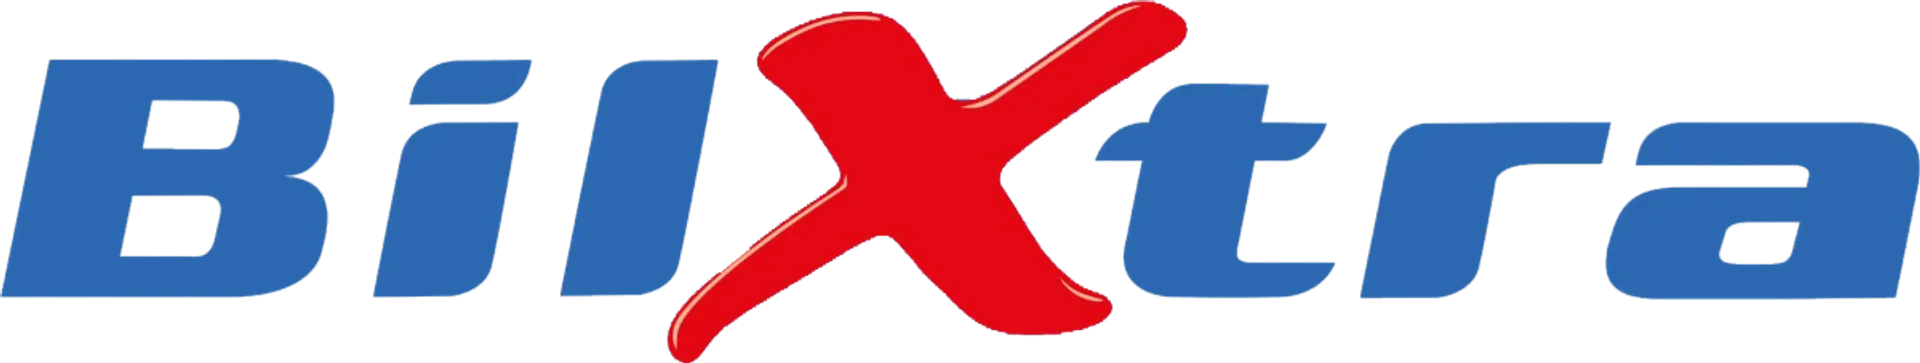 Bilxtra logo